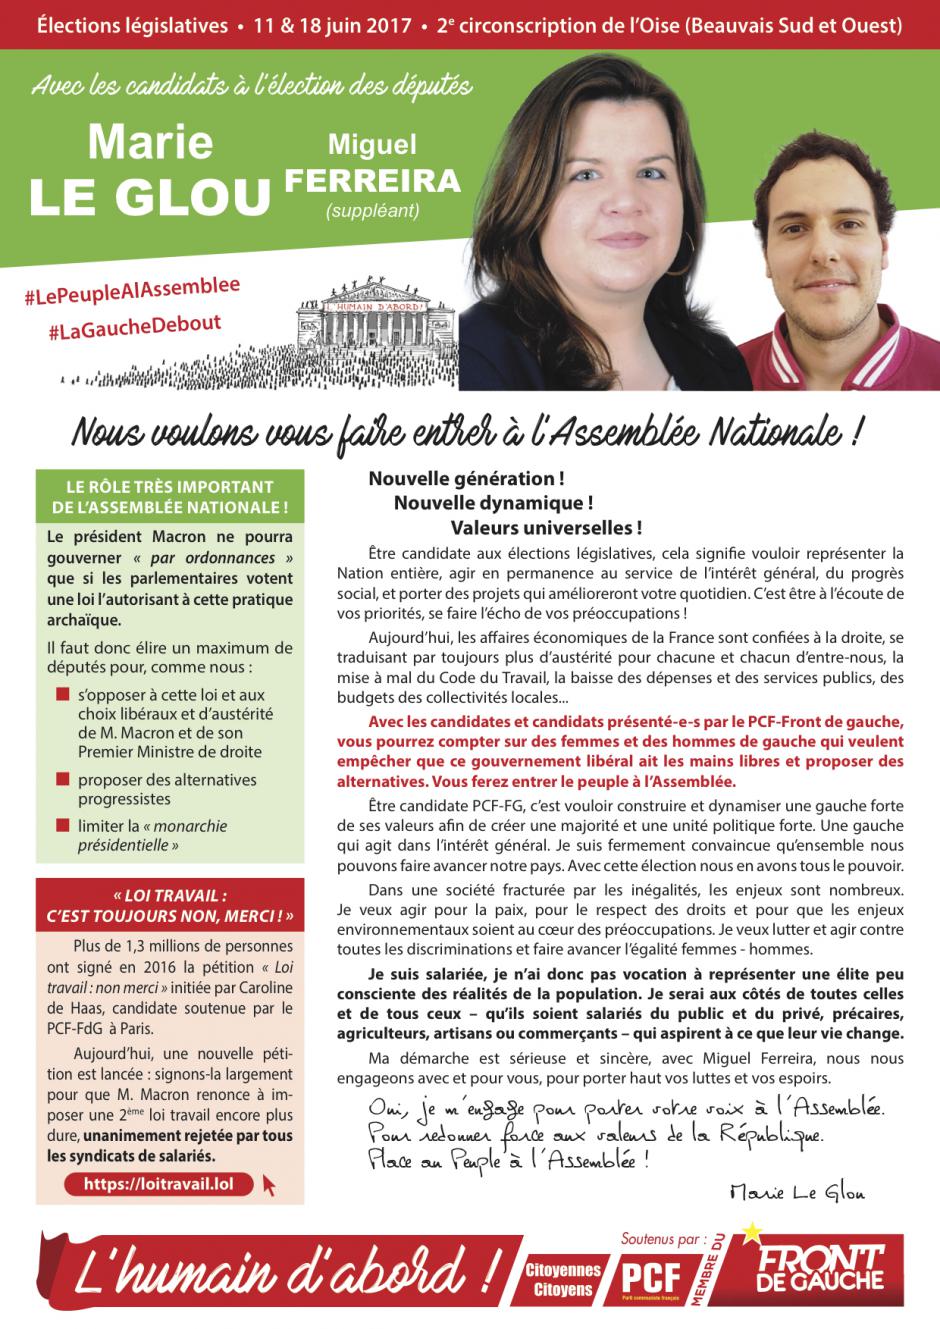 Profession de foi de Marie Le Glou et Miguel Ferreira - 2e circonscription de l'Oise, 11 juin 2017